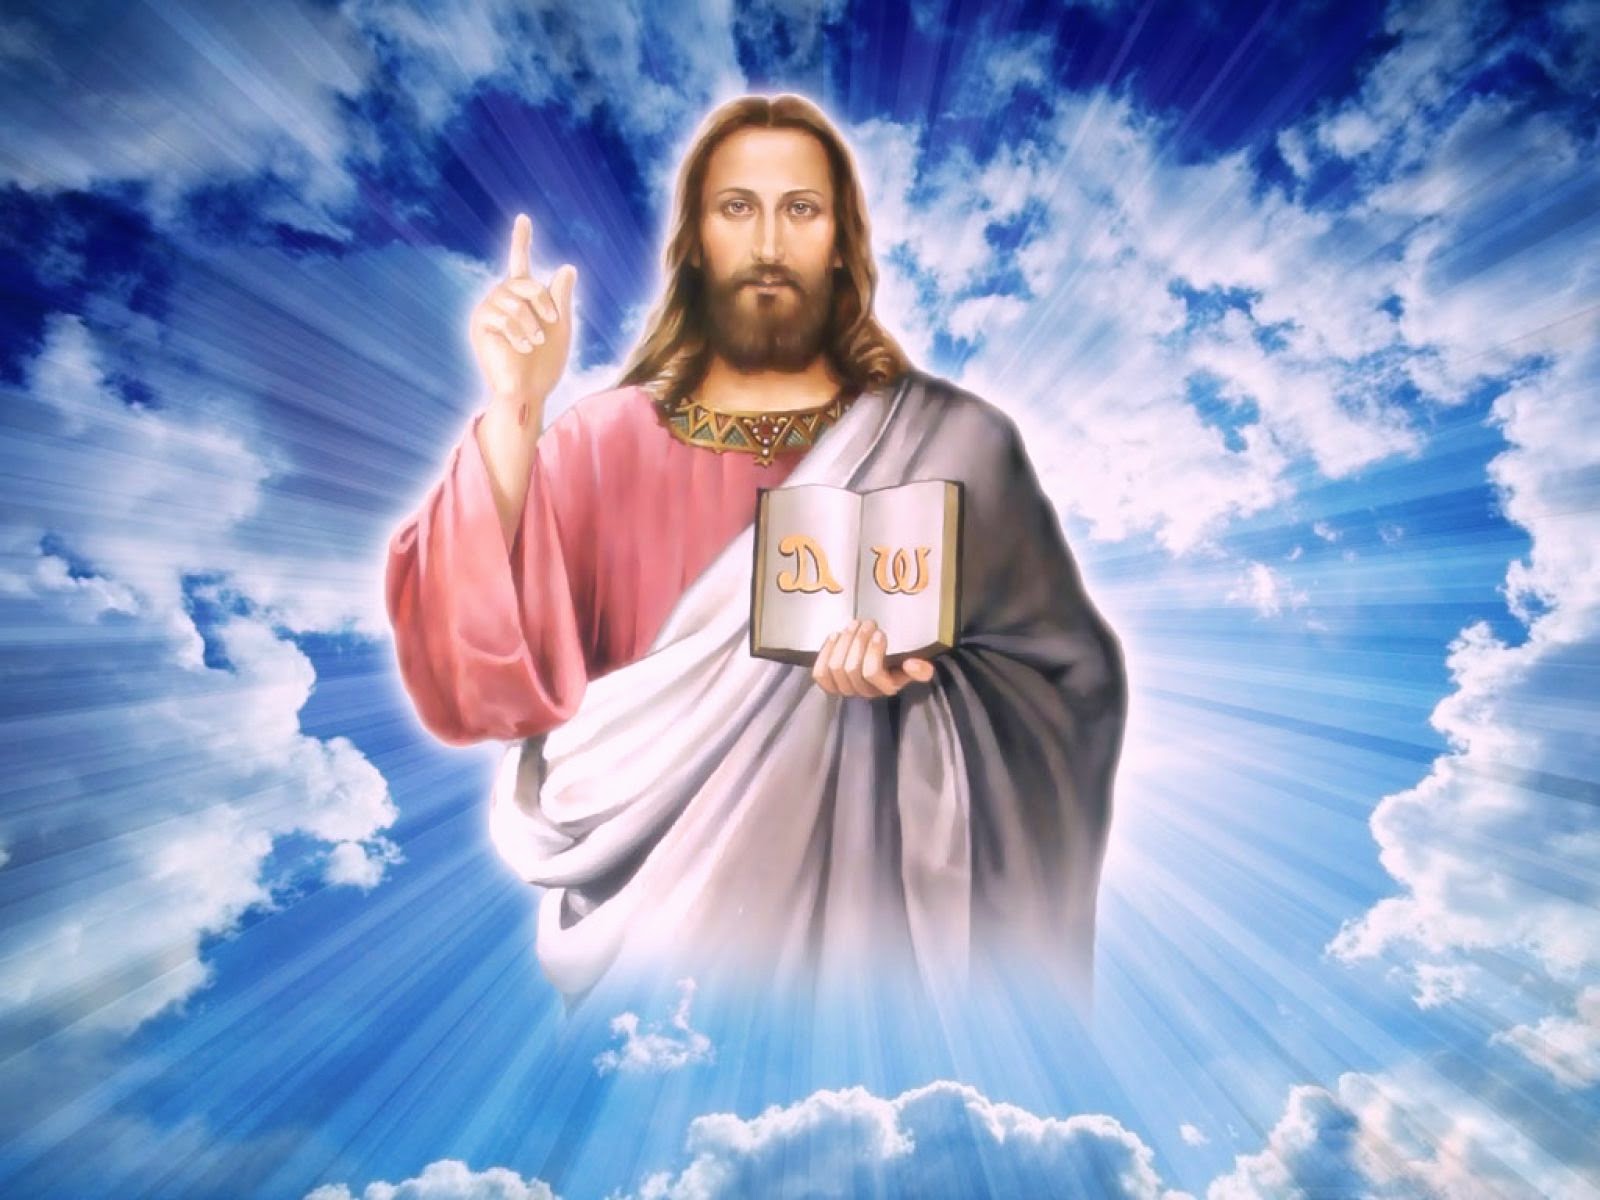 Hình ảnh Chúa Giêsu ôm trọn nhân loại bệnh dịch trở thành hot trên mạng  xã hội Ý